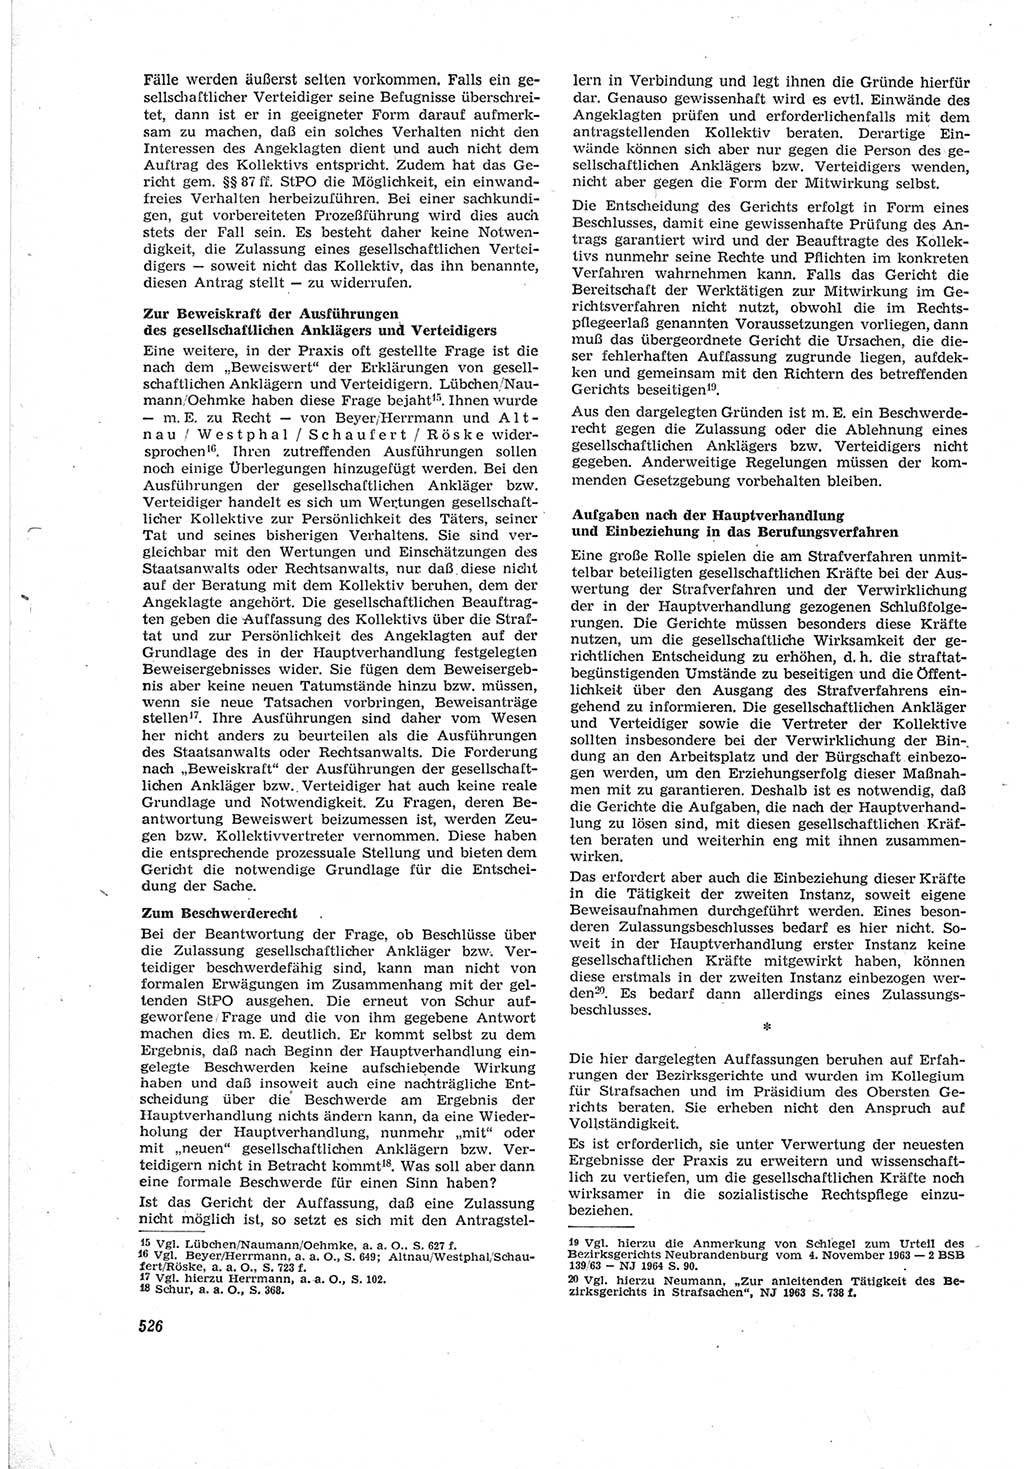 Neue Justiz (NJ), Zeitschrift für Recht und Rechtswissenschaft [Deutsche Demokratische Republik (DDR)], 18. Jahrgang 1964, Seite 526 (NJ DDR 1964, S. 526)